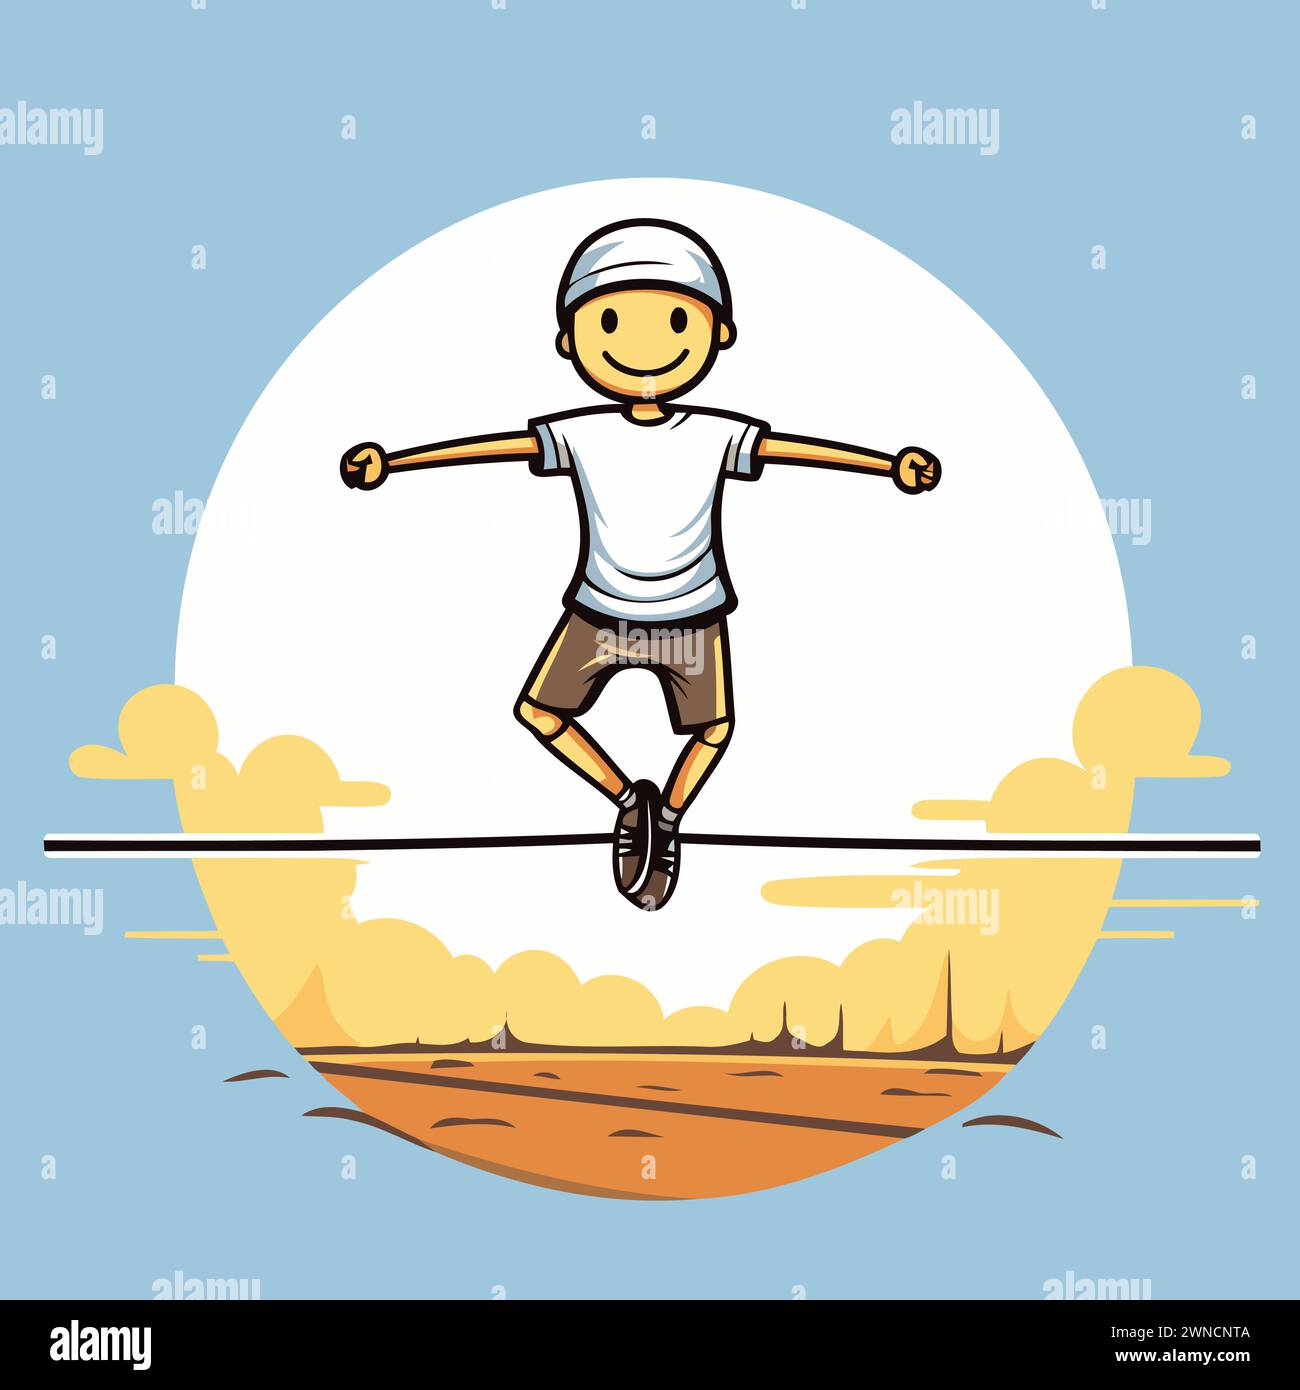 Illustration de dessin animé d'un homme sautant sur une corde raide. Illustration de Vecteur